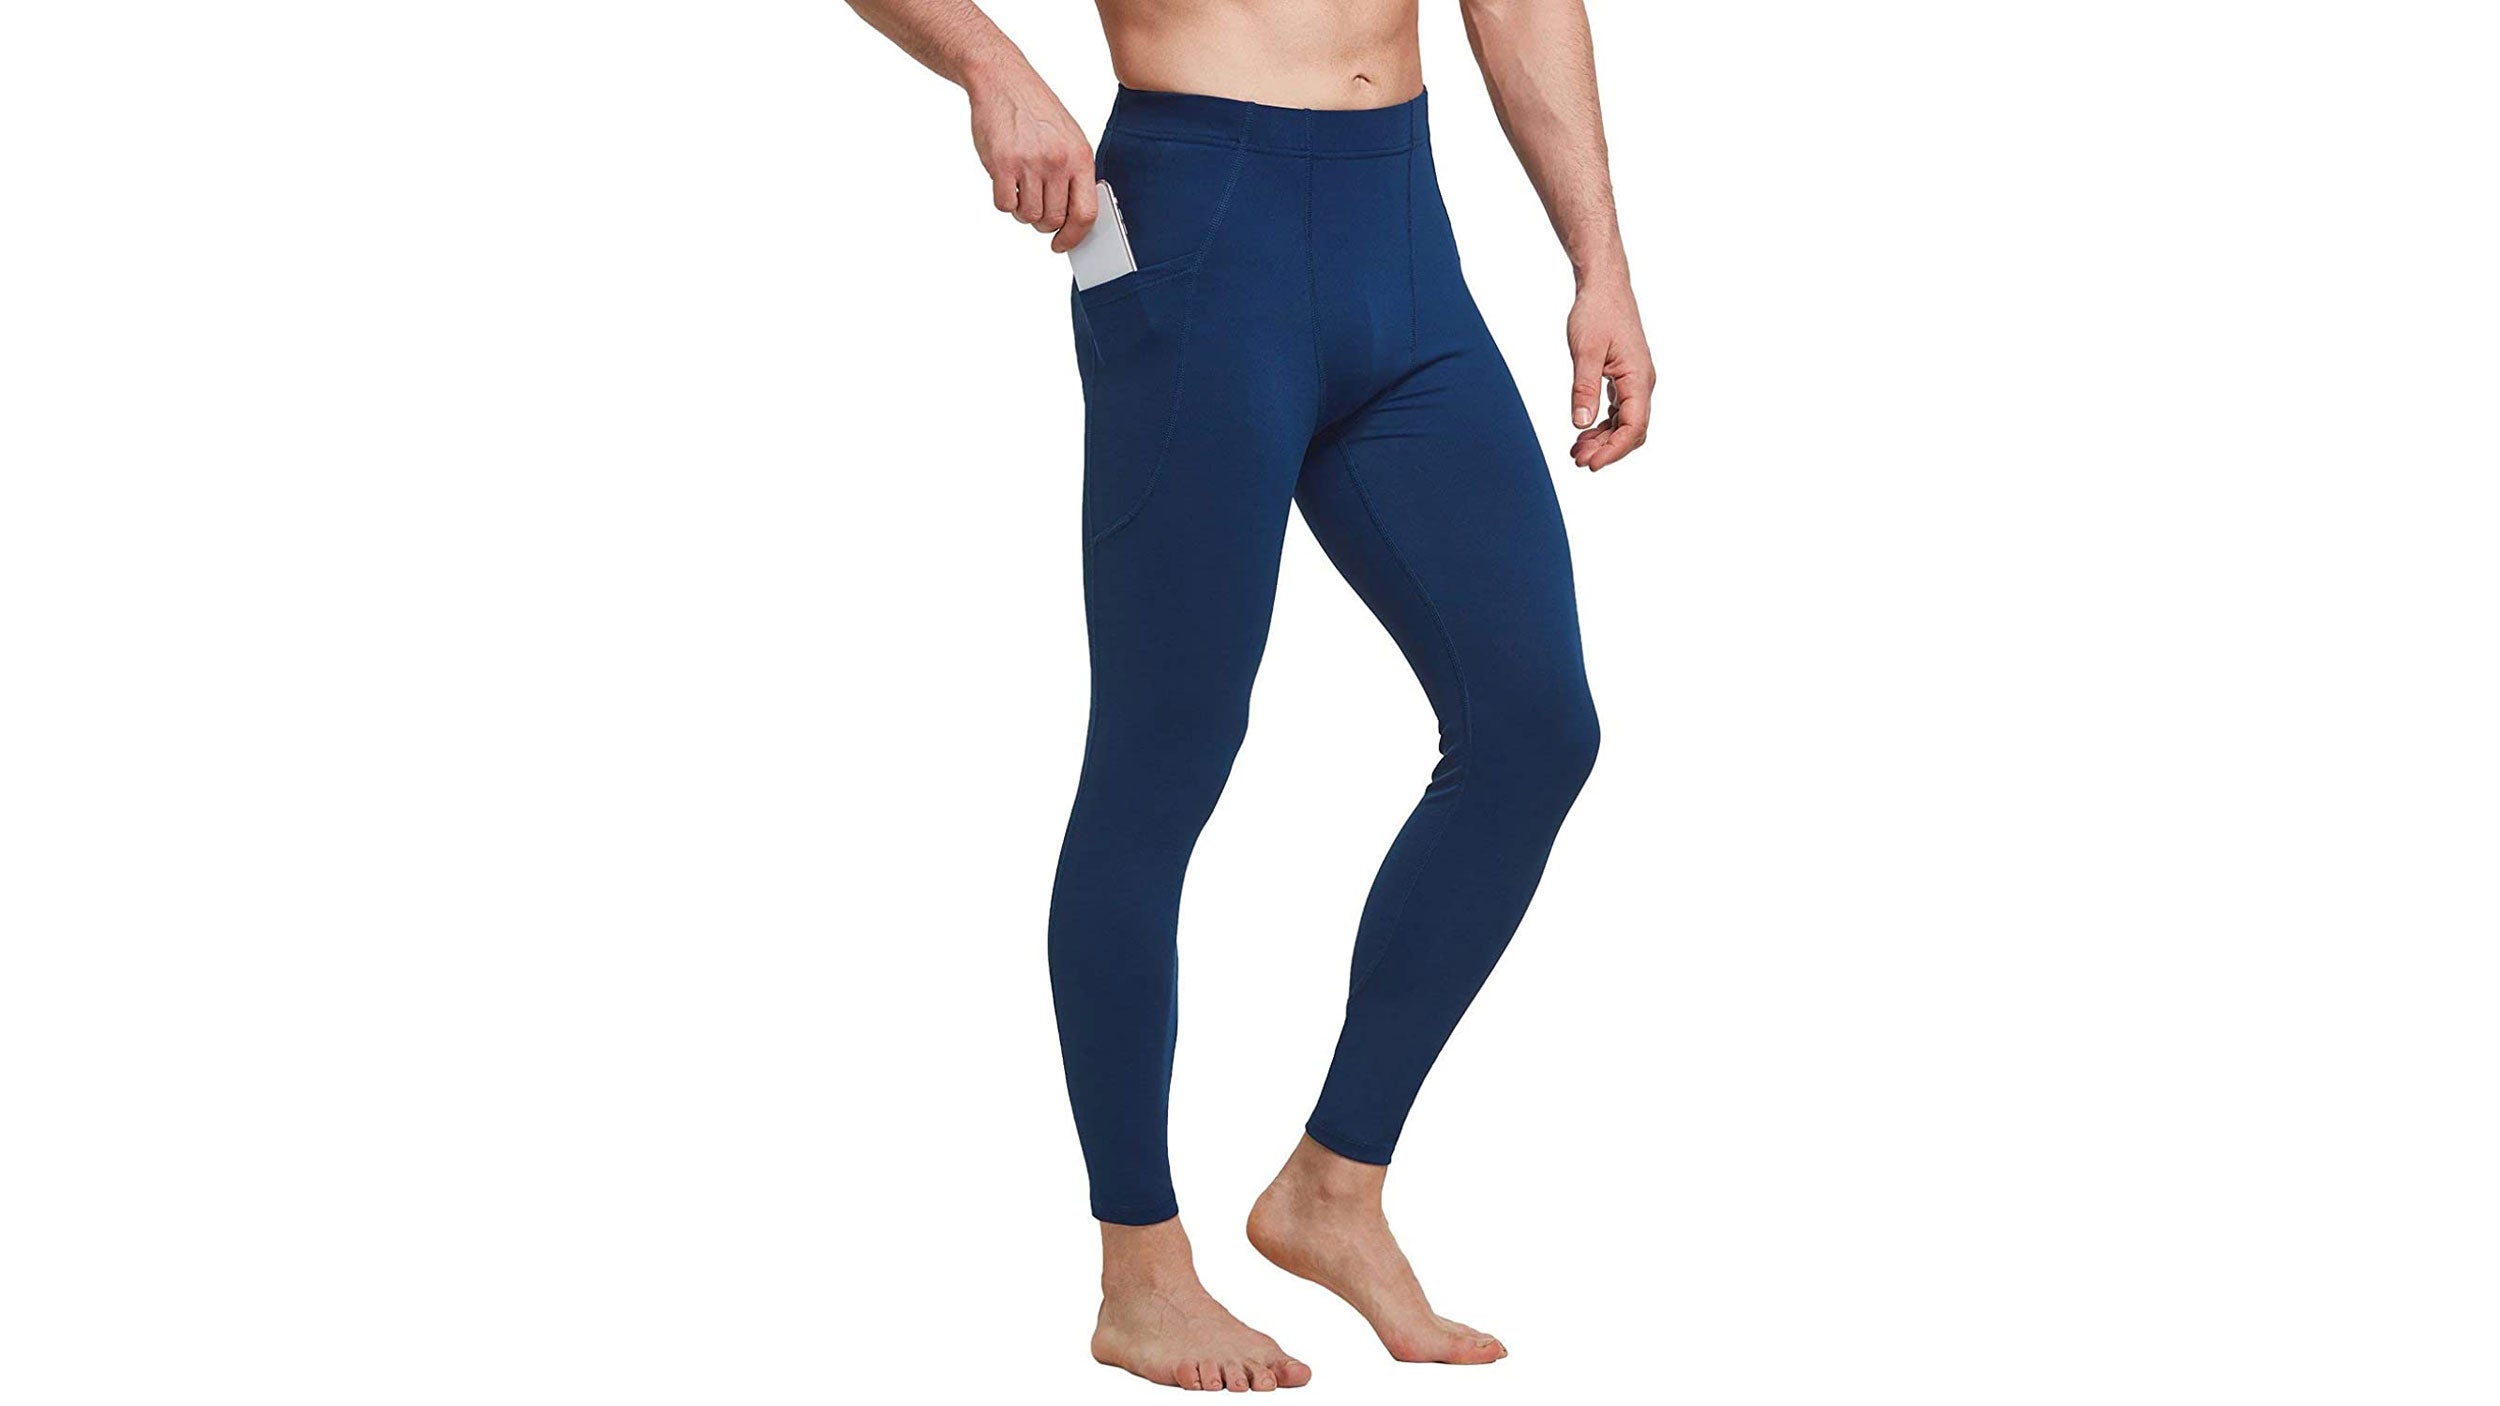 Men's Cotton Capri Kundalini Yoga Pants - Loose Fit - Island Importer